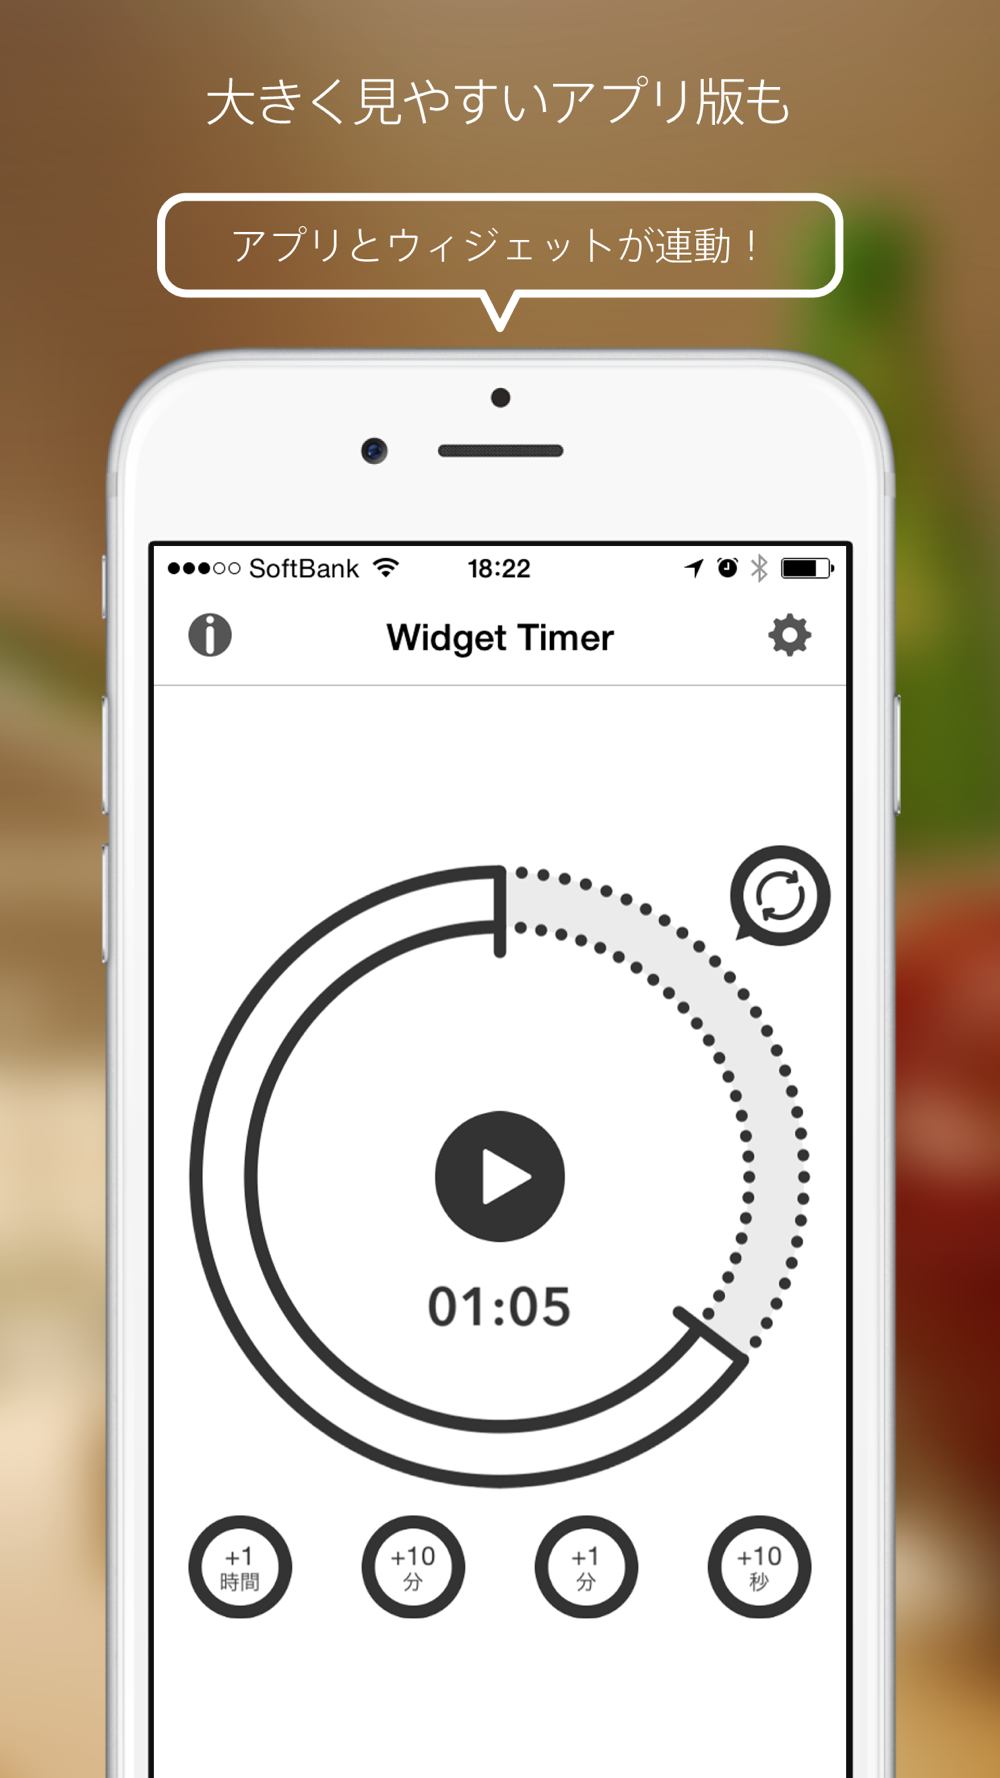 ウィジェット タイマー 通知センターで使えるシンプルなキッチンタイマー Download App For Iphone Steprimo Com